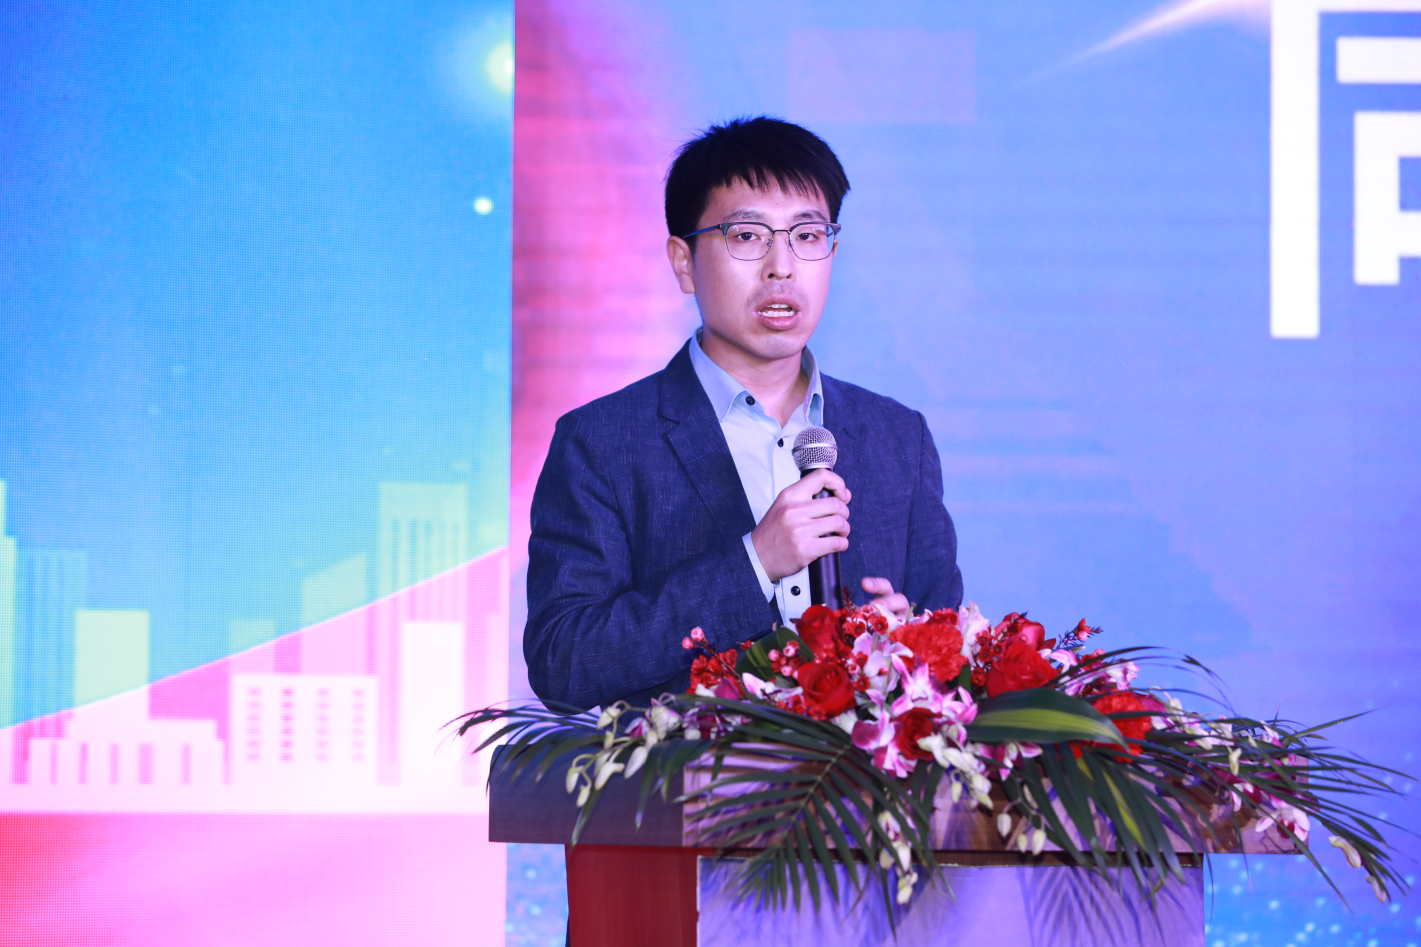 中鐵科技有限公司模架產業中心書記兼總經理 郭偉鋒先生